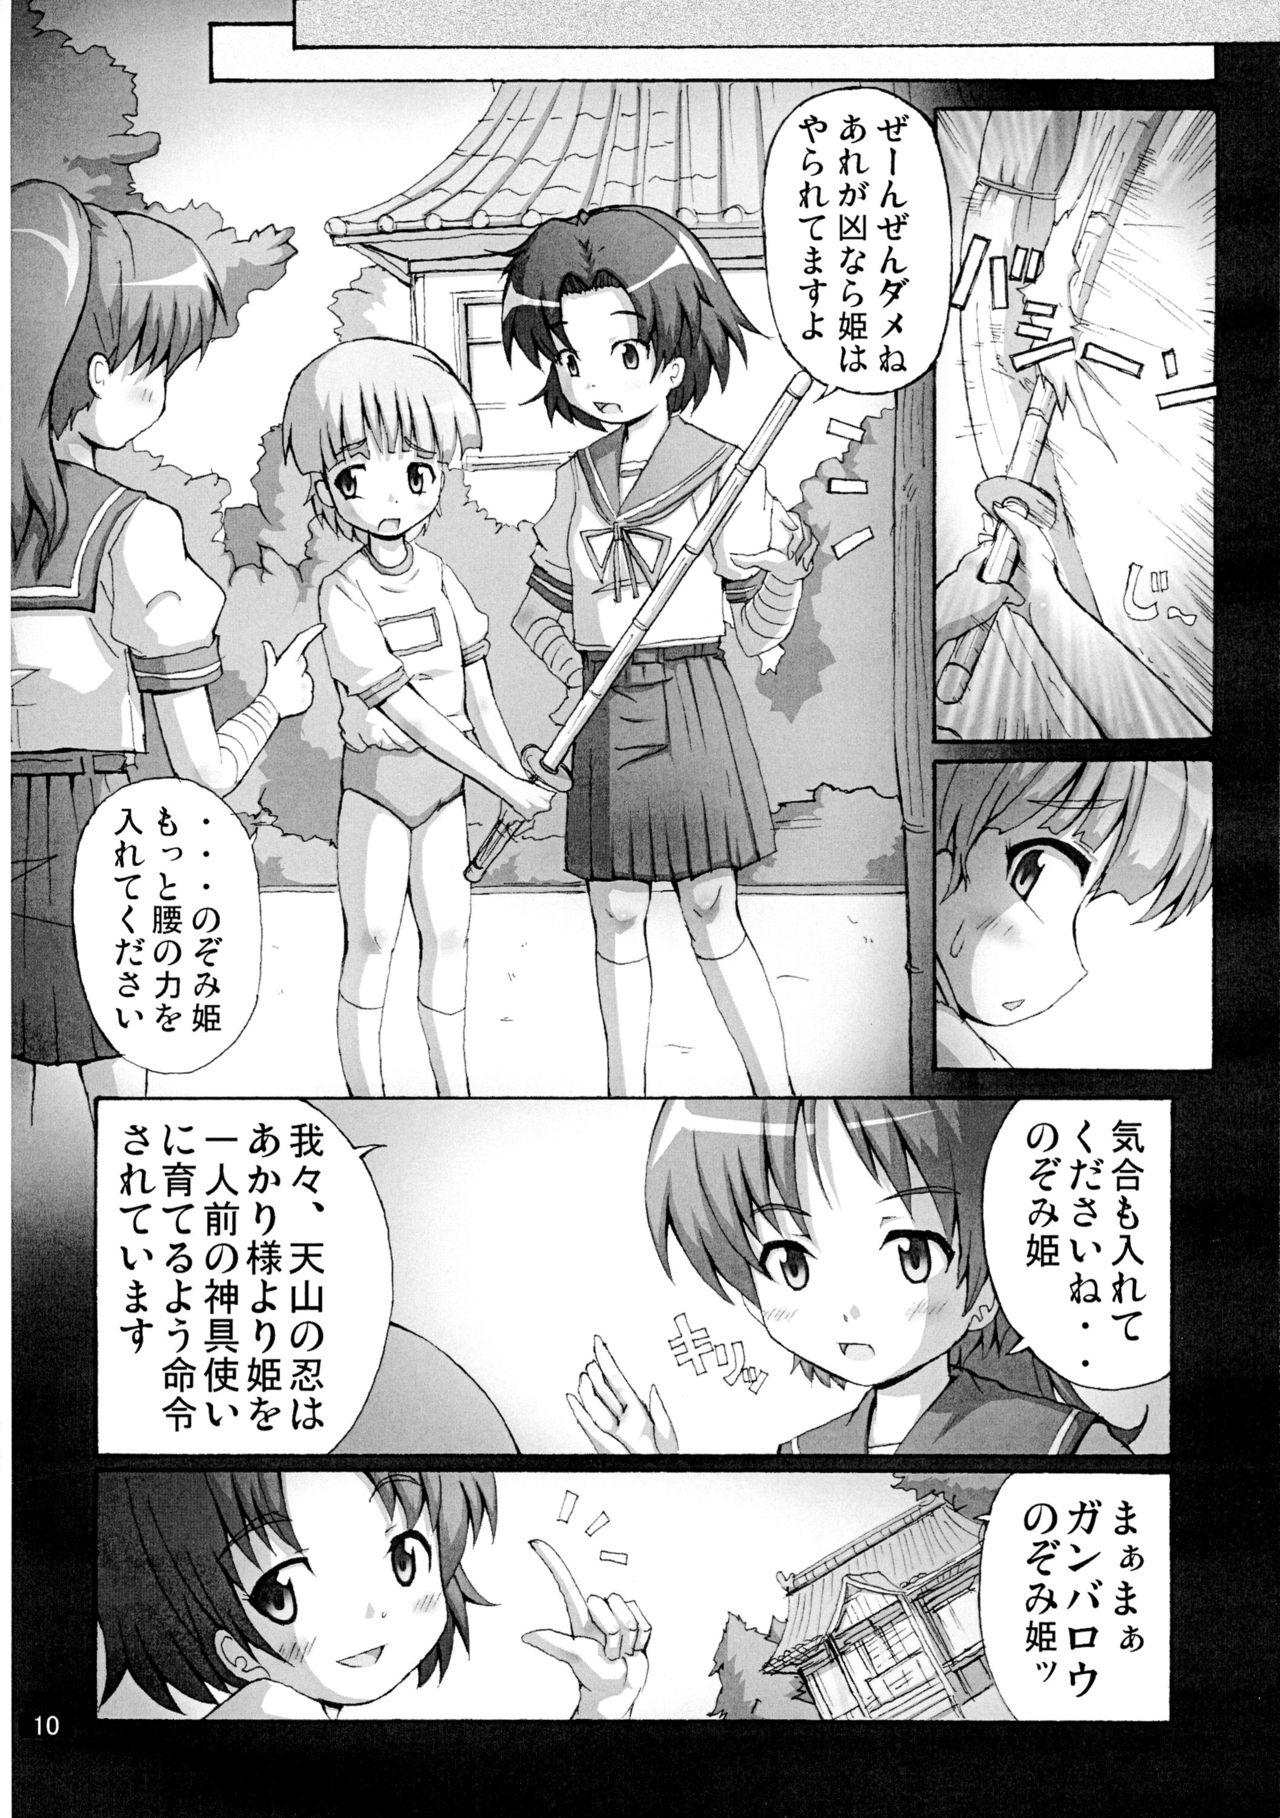 Clitoris Kaiun no Taimashi Nozomi 5 1/ 2 Brunette - Page 10